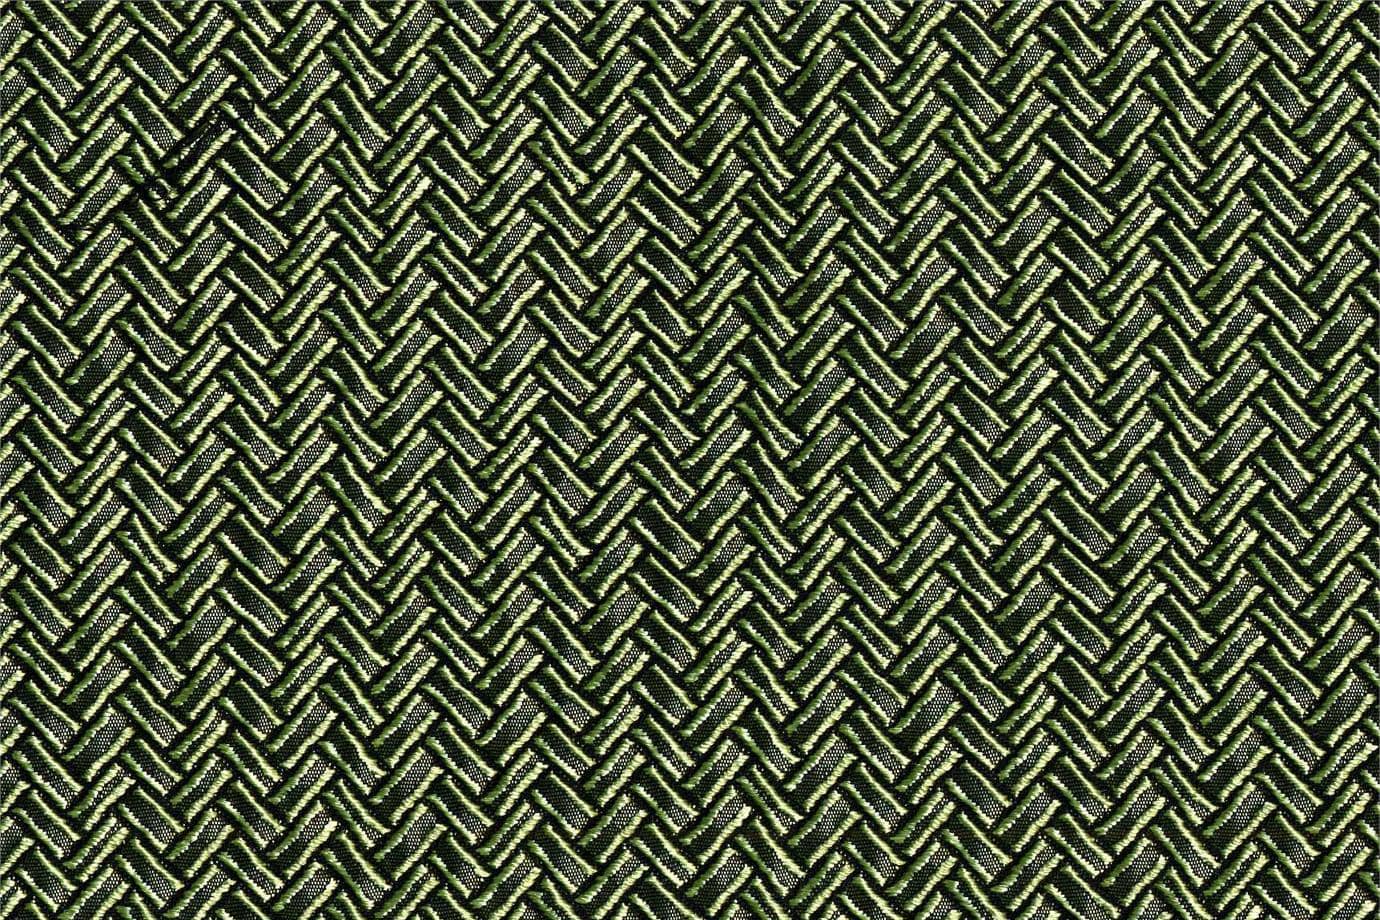 J1538 FARINELLA 002 Ebano home decoration fabric